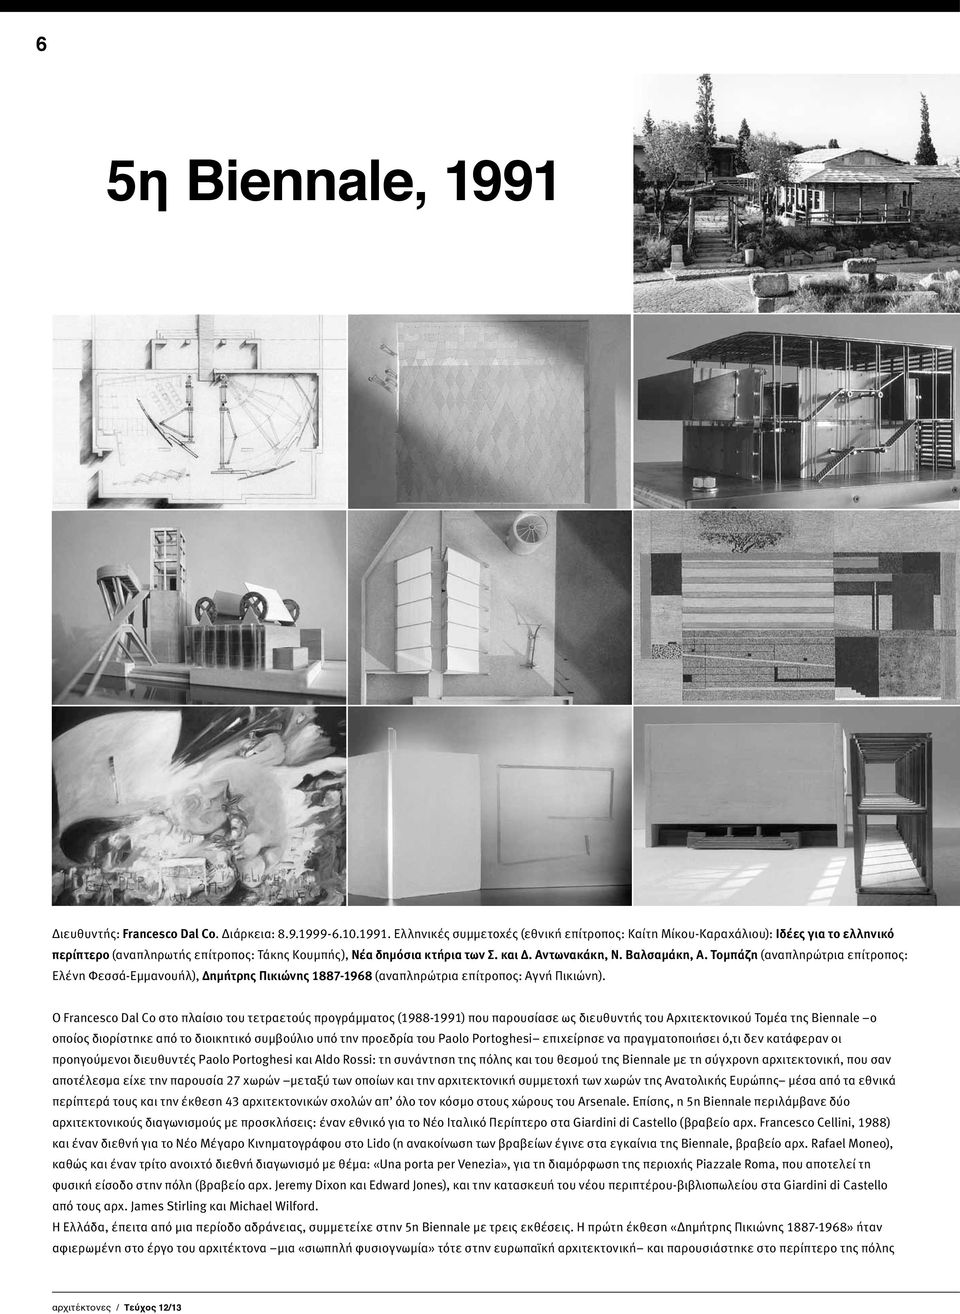 Ο Francesco Dal Co στο πλαίσιο του τετραετούς προγράμματος (1988-1991) που παρουσίασε ως διευθυντής του Αρχιτεκτονικού Τομέα της Biennale ο οποίος διορίστηκε από το διοικητικό συμβούλιο υπό την